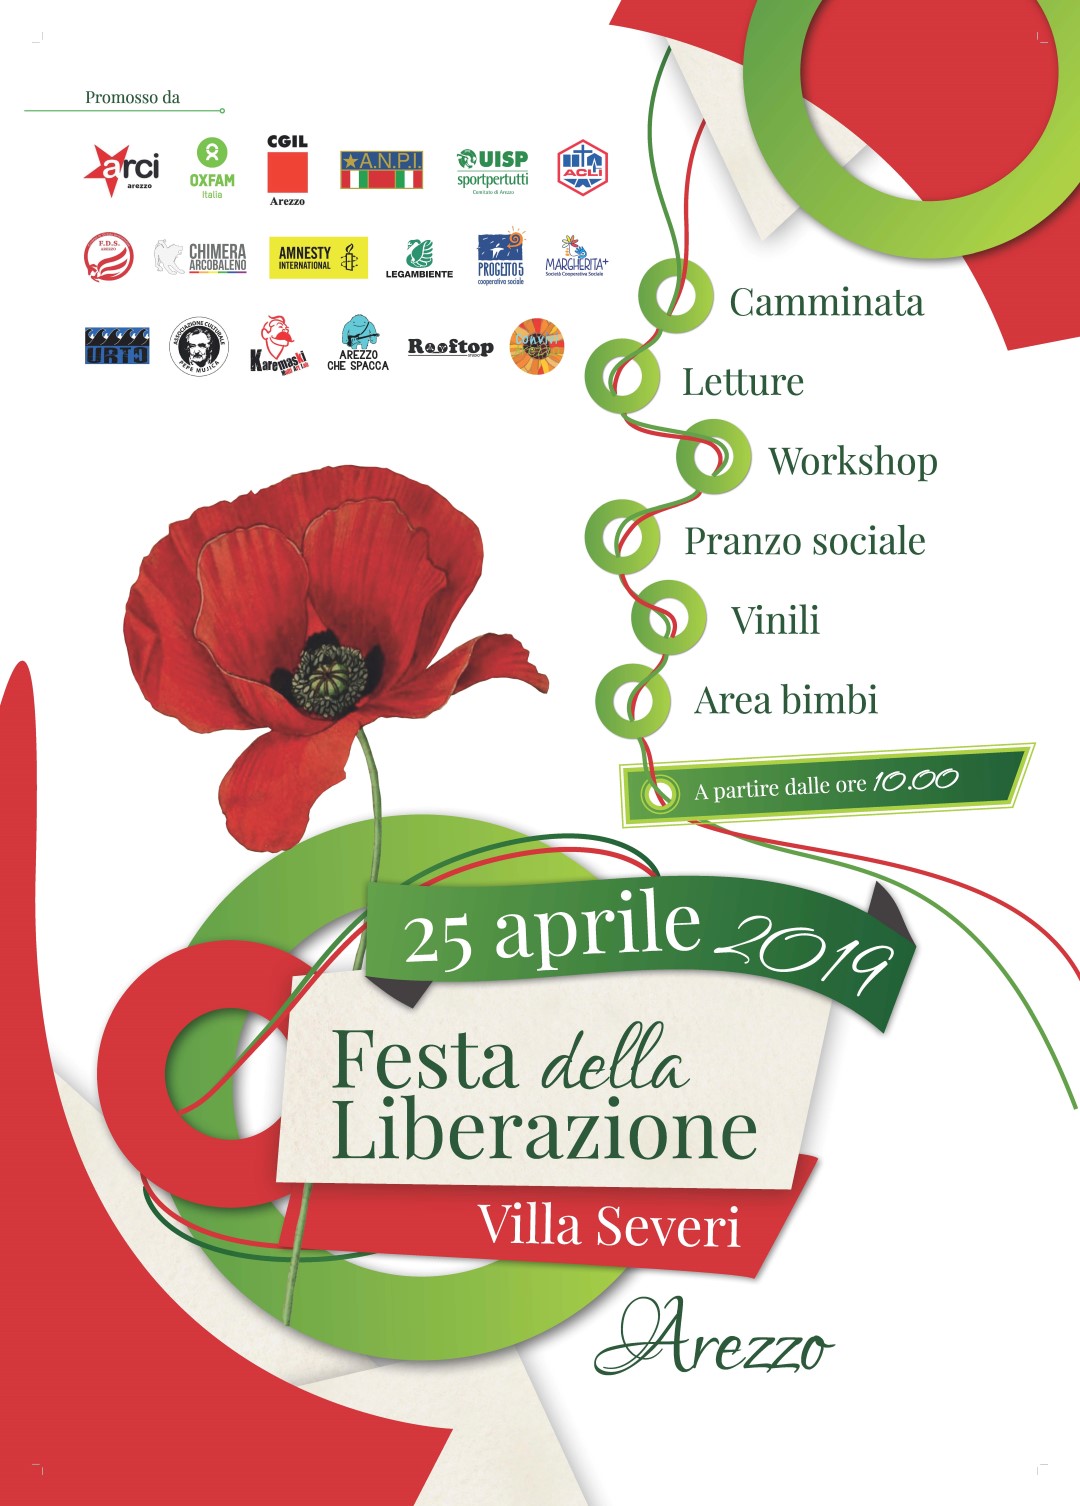 Il Programma delle celebrazioni del 25 aprile nella città di Arezzo